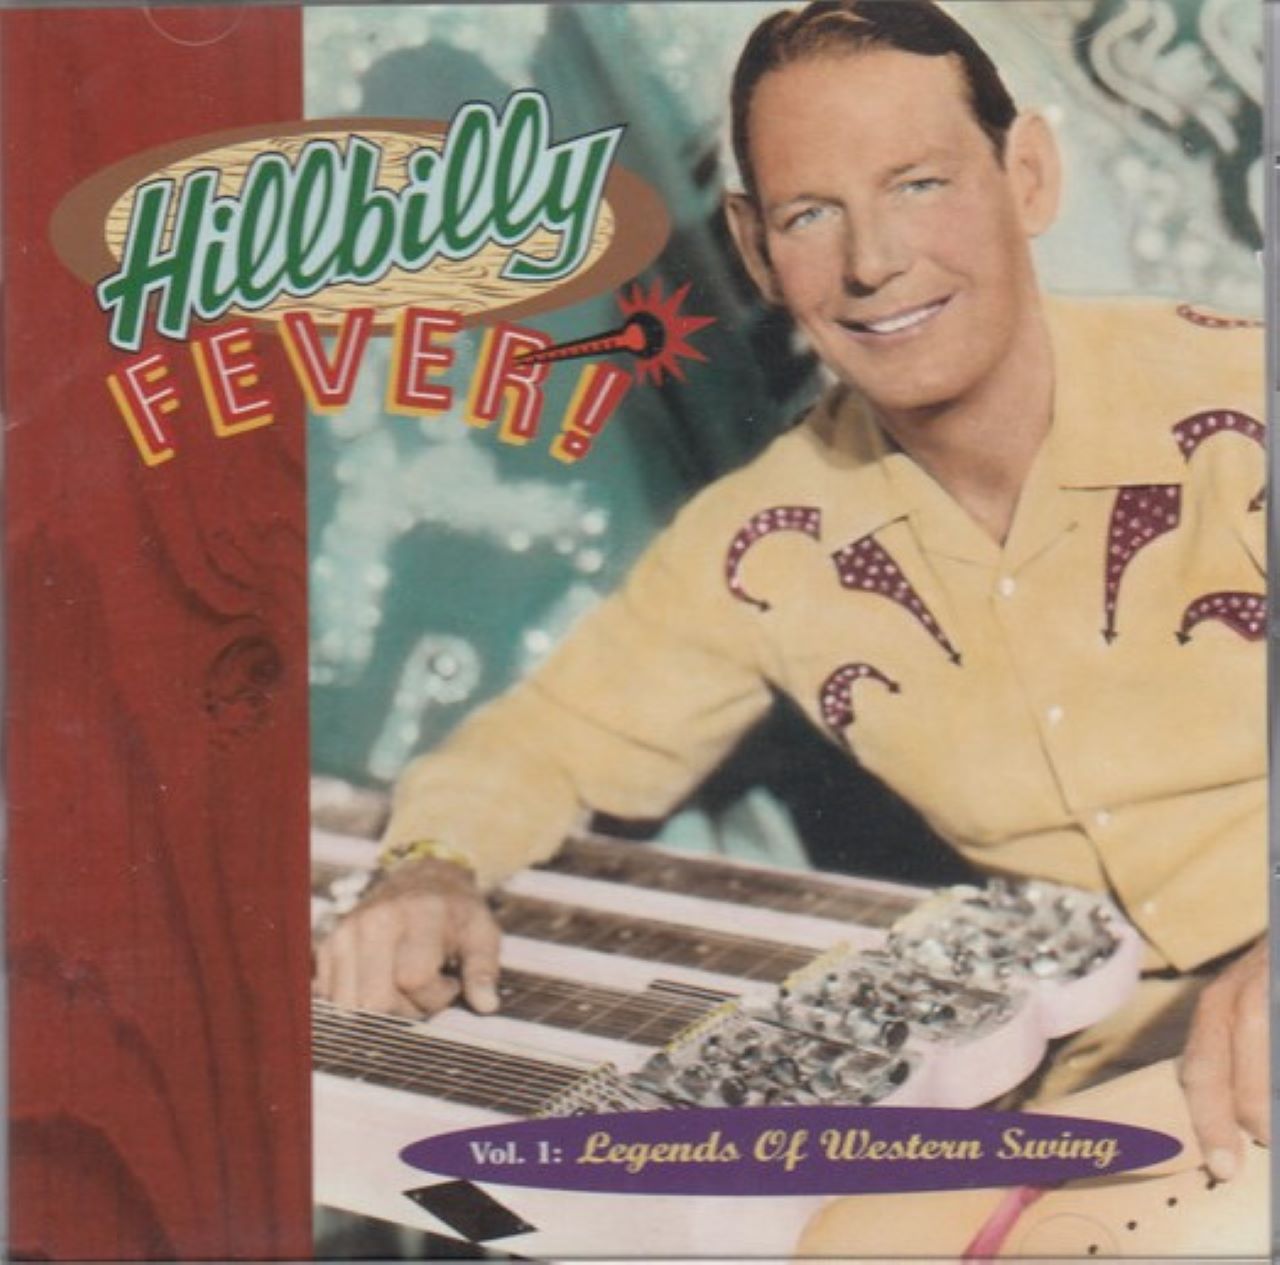 A.A.V.V. - Hillbilly Fever Vol. 1 Legends Of Western Swing cover album